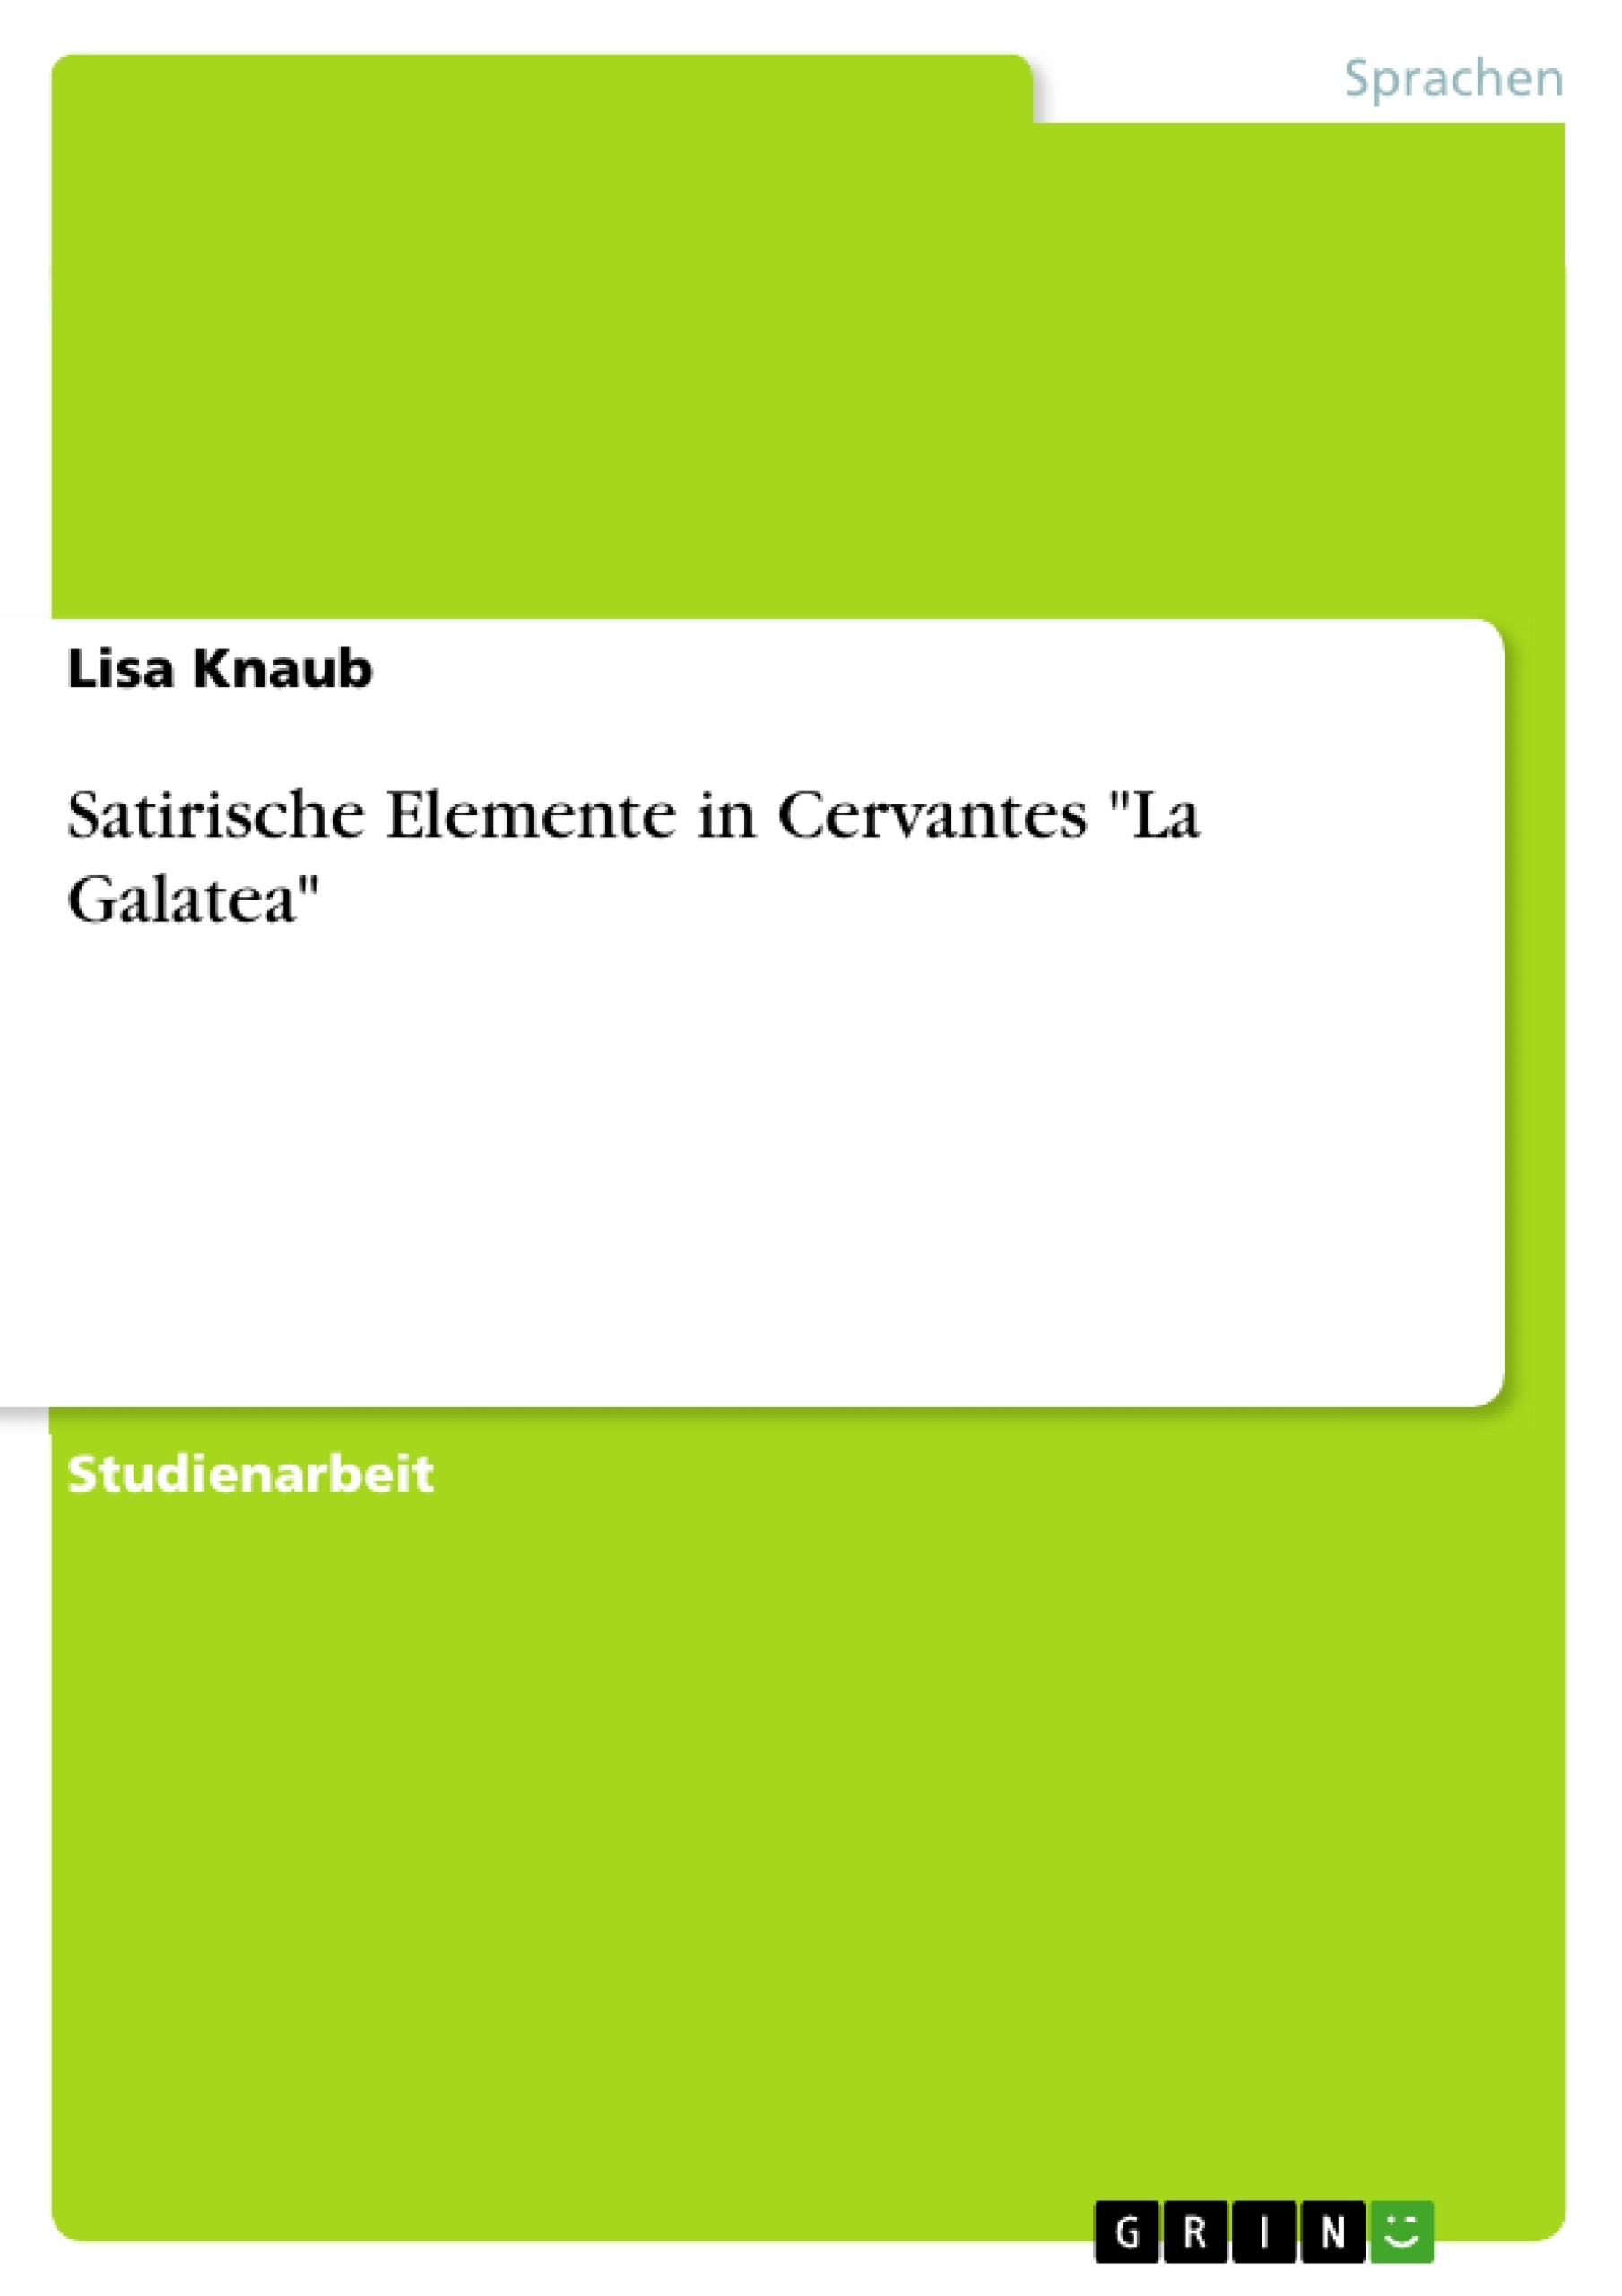 Title: Satirische Elemente in Cervantes "La Galatea"